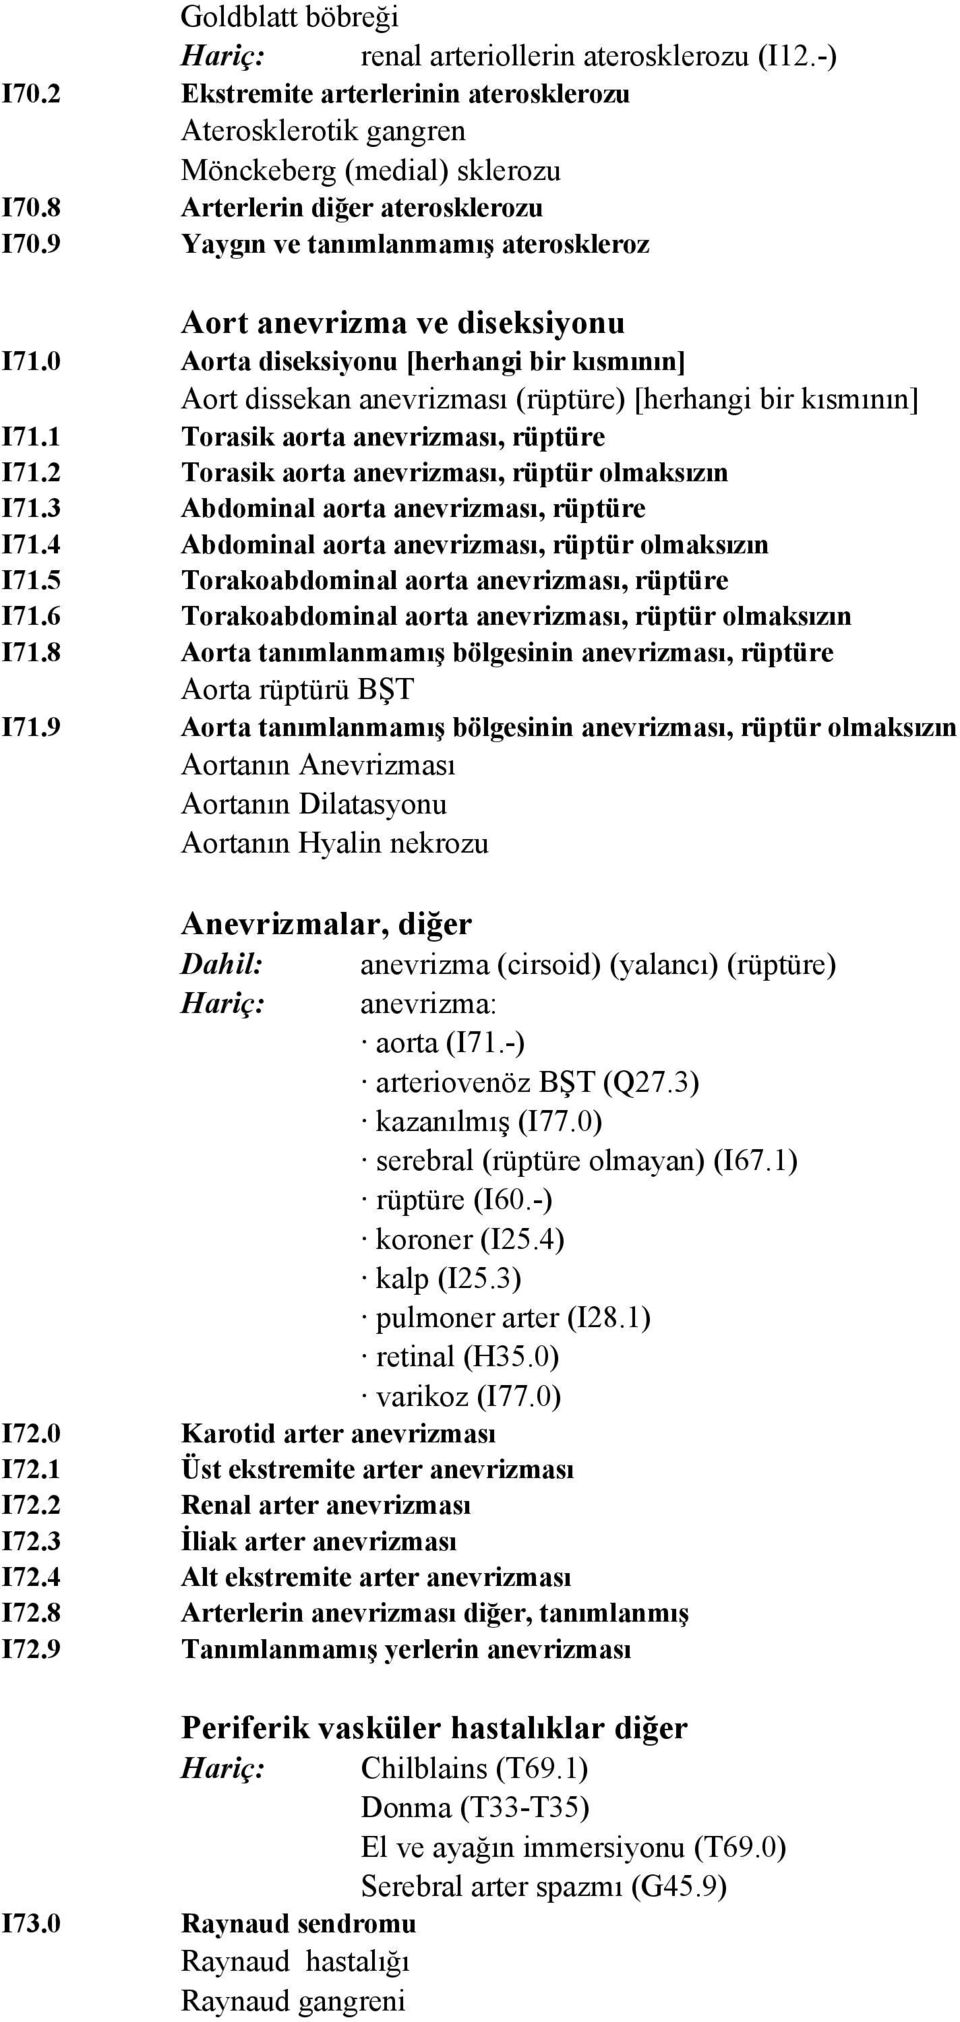 0 Aorta diseksiyonu [herhangi bir kısmının] Aort dissekan anevrizması (rüptüre) [herhangi bir kısmının] I71.1 Torasik aorta anevrizması, rüptüre I71.2 Torasik aorta anevrizması, rüptür olmaksızın I71.